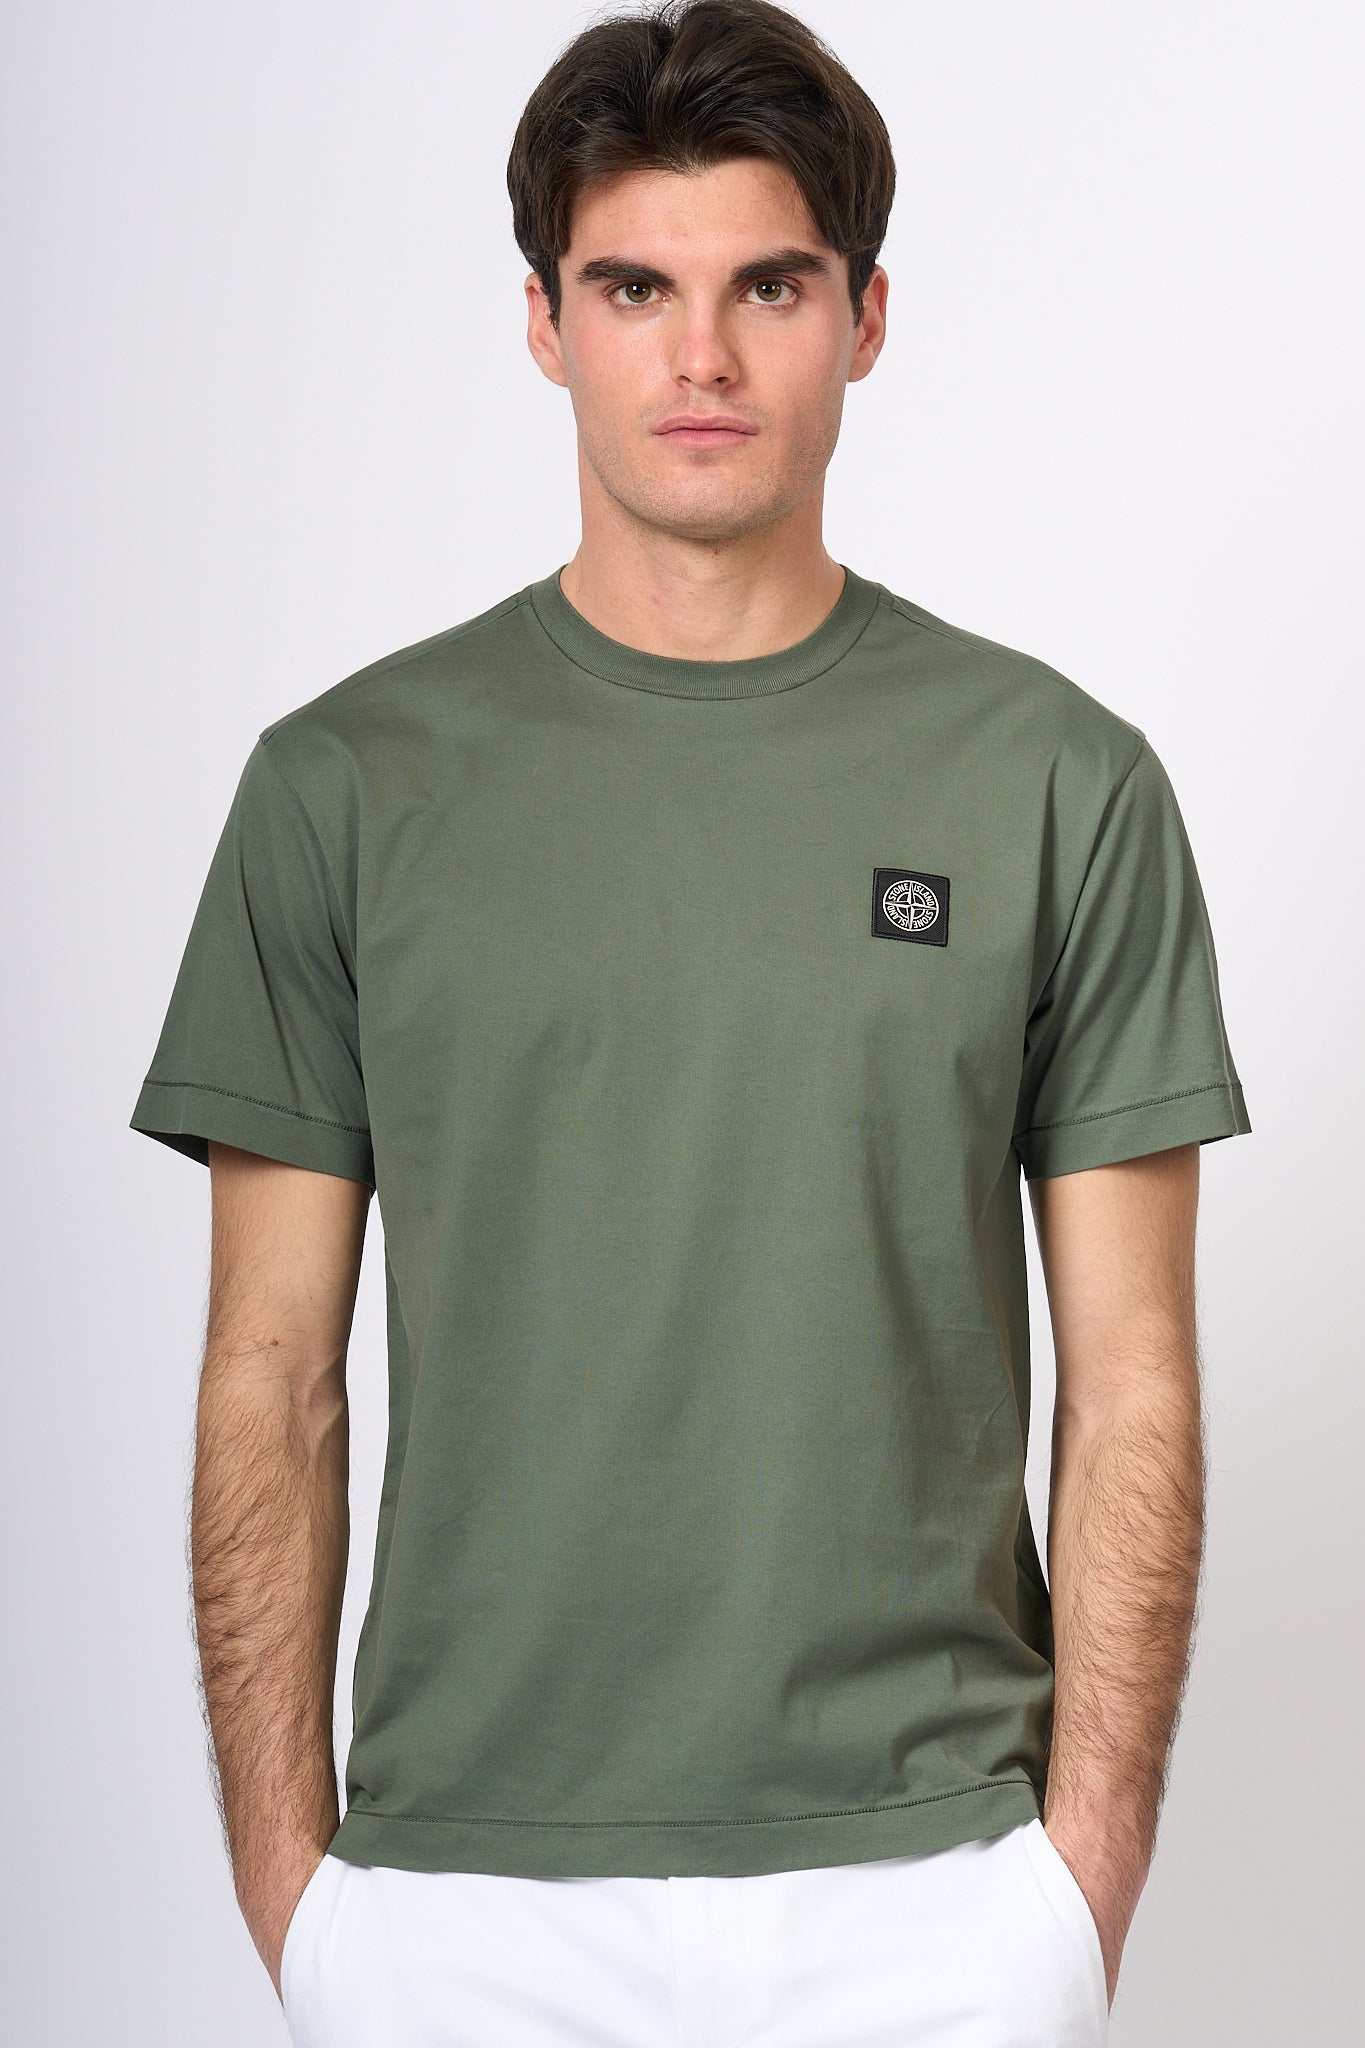 Stone Island T-shirt Verde Muschio Uomo-1